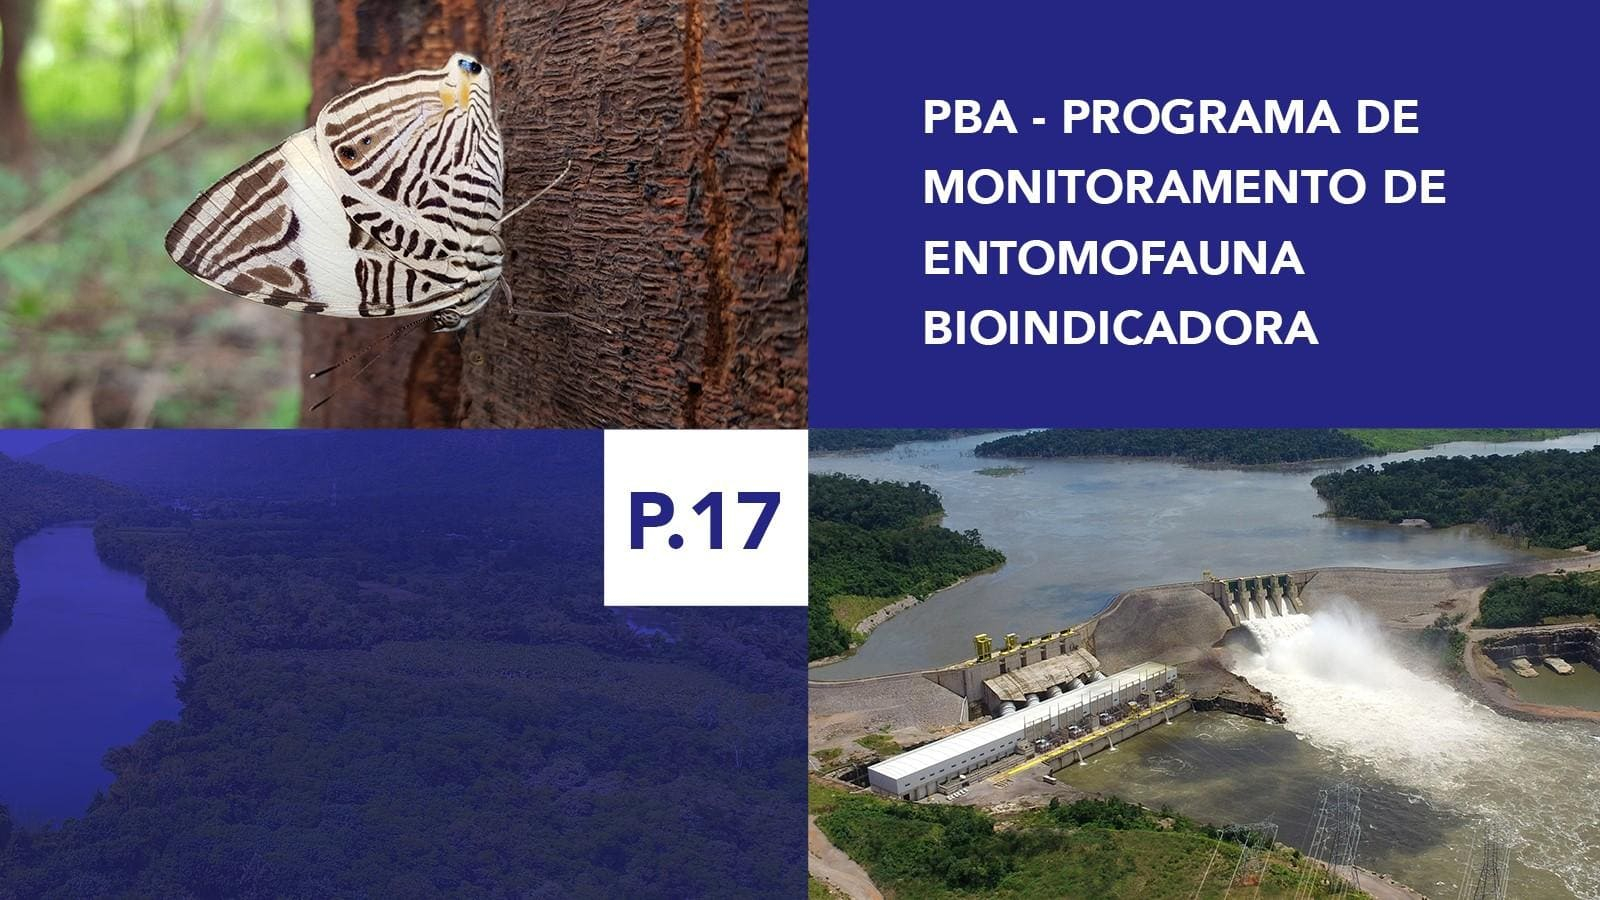 P.17 - Programa de Monitoramento de Entomofauna Bioindicadora